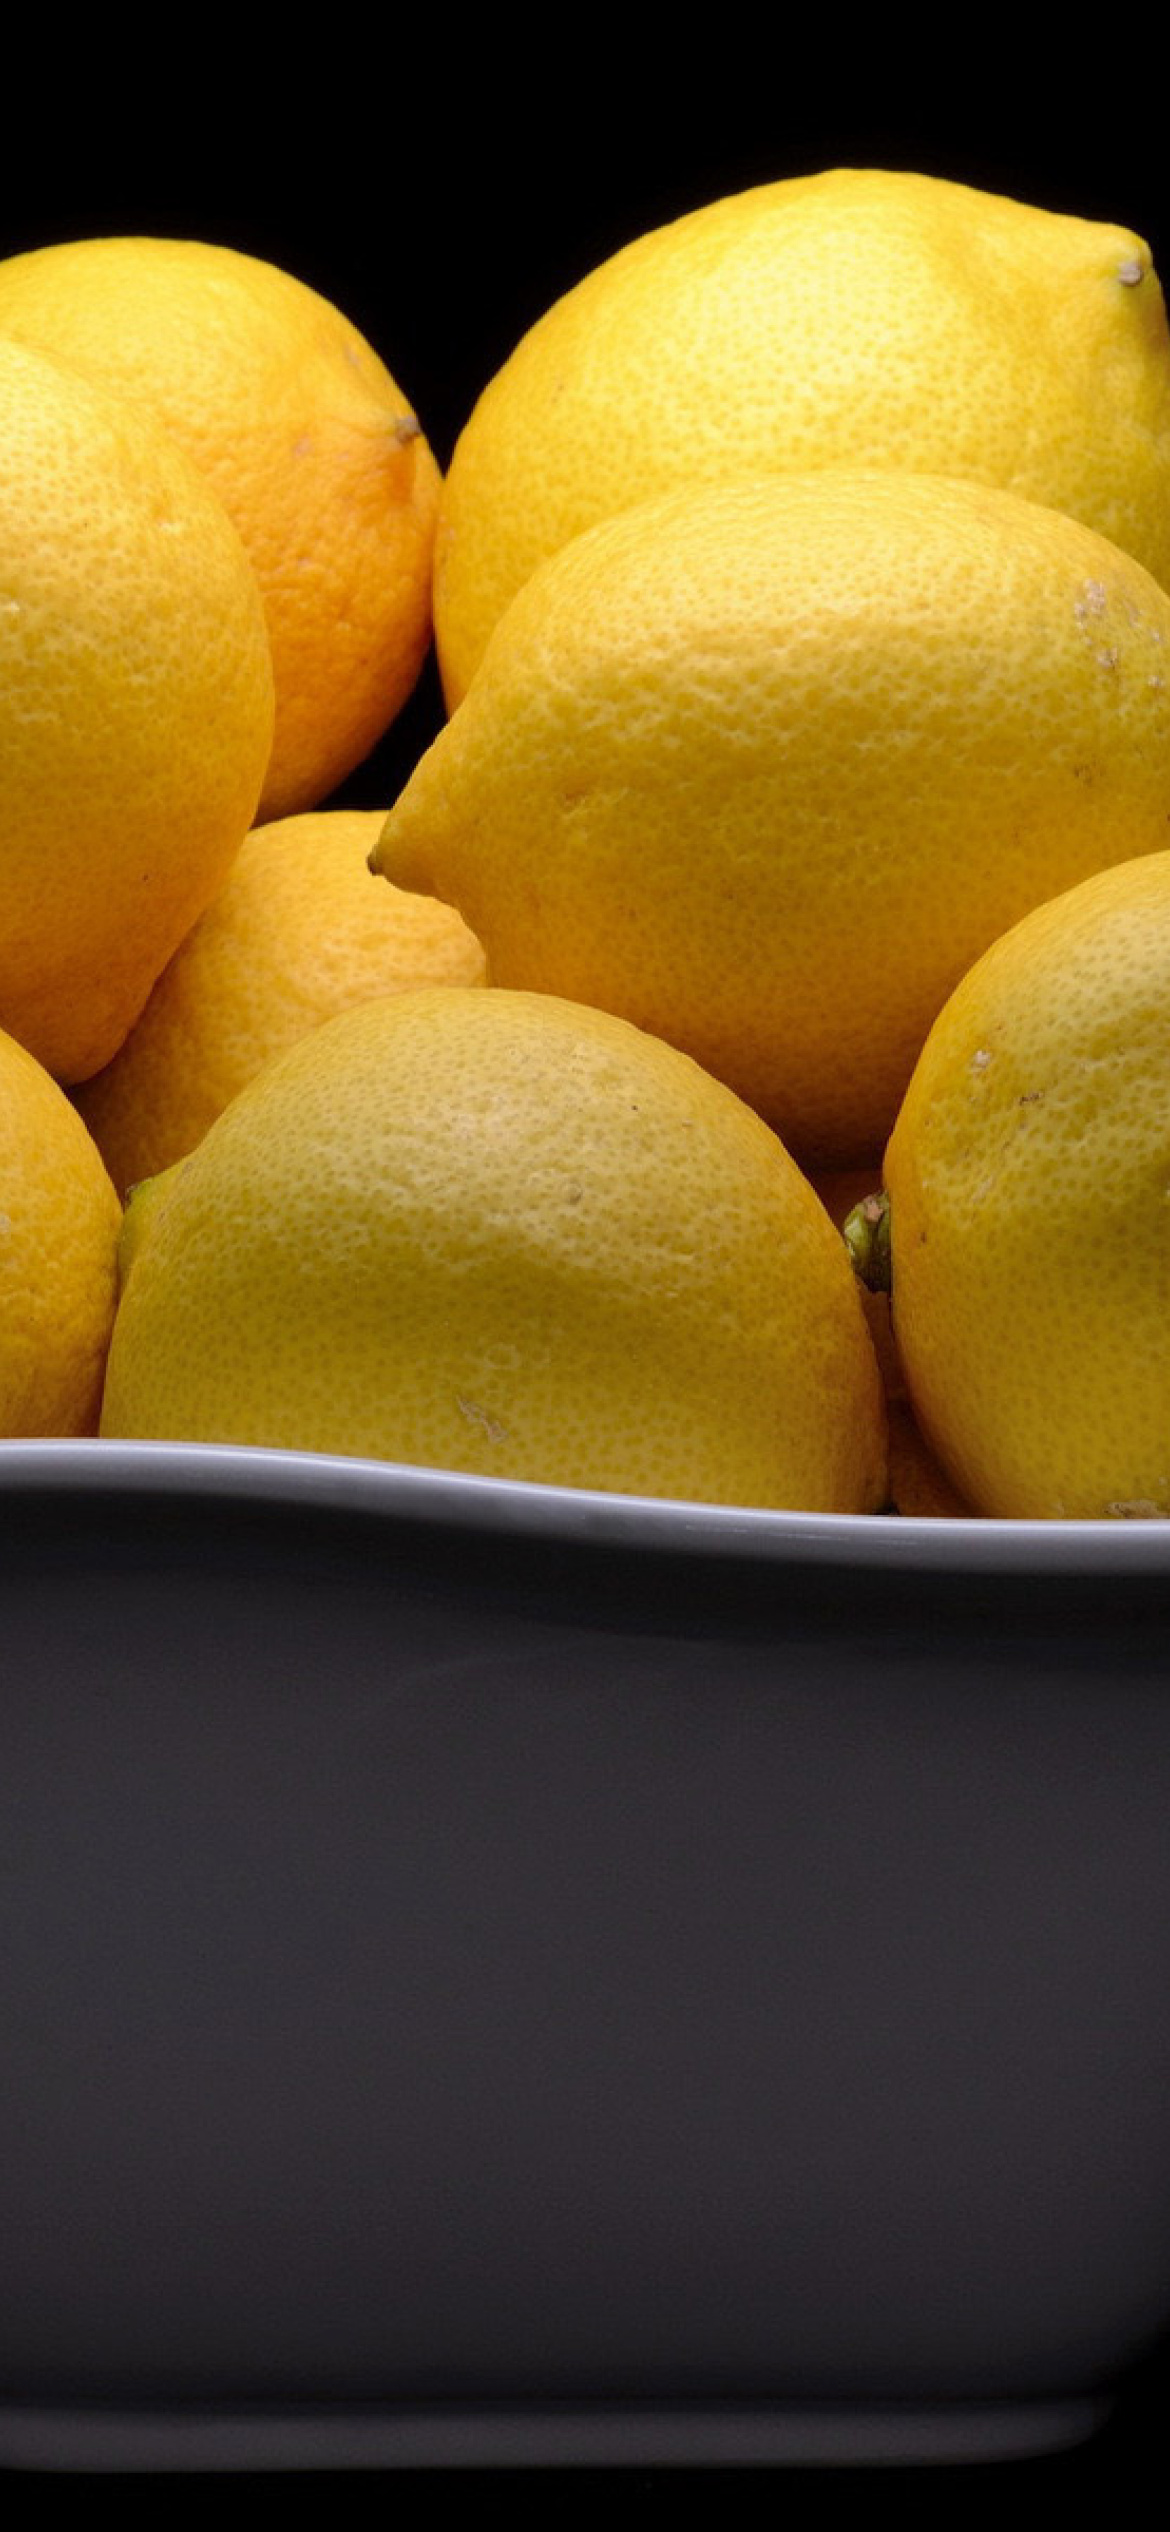 Lemons wallpaper 1170x2532